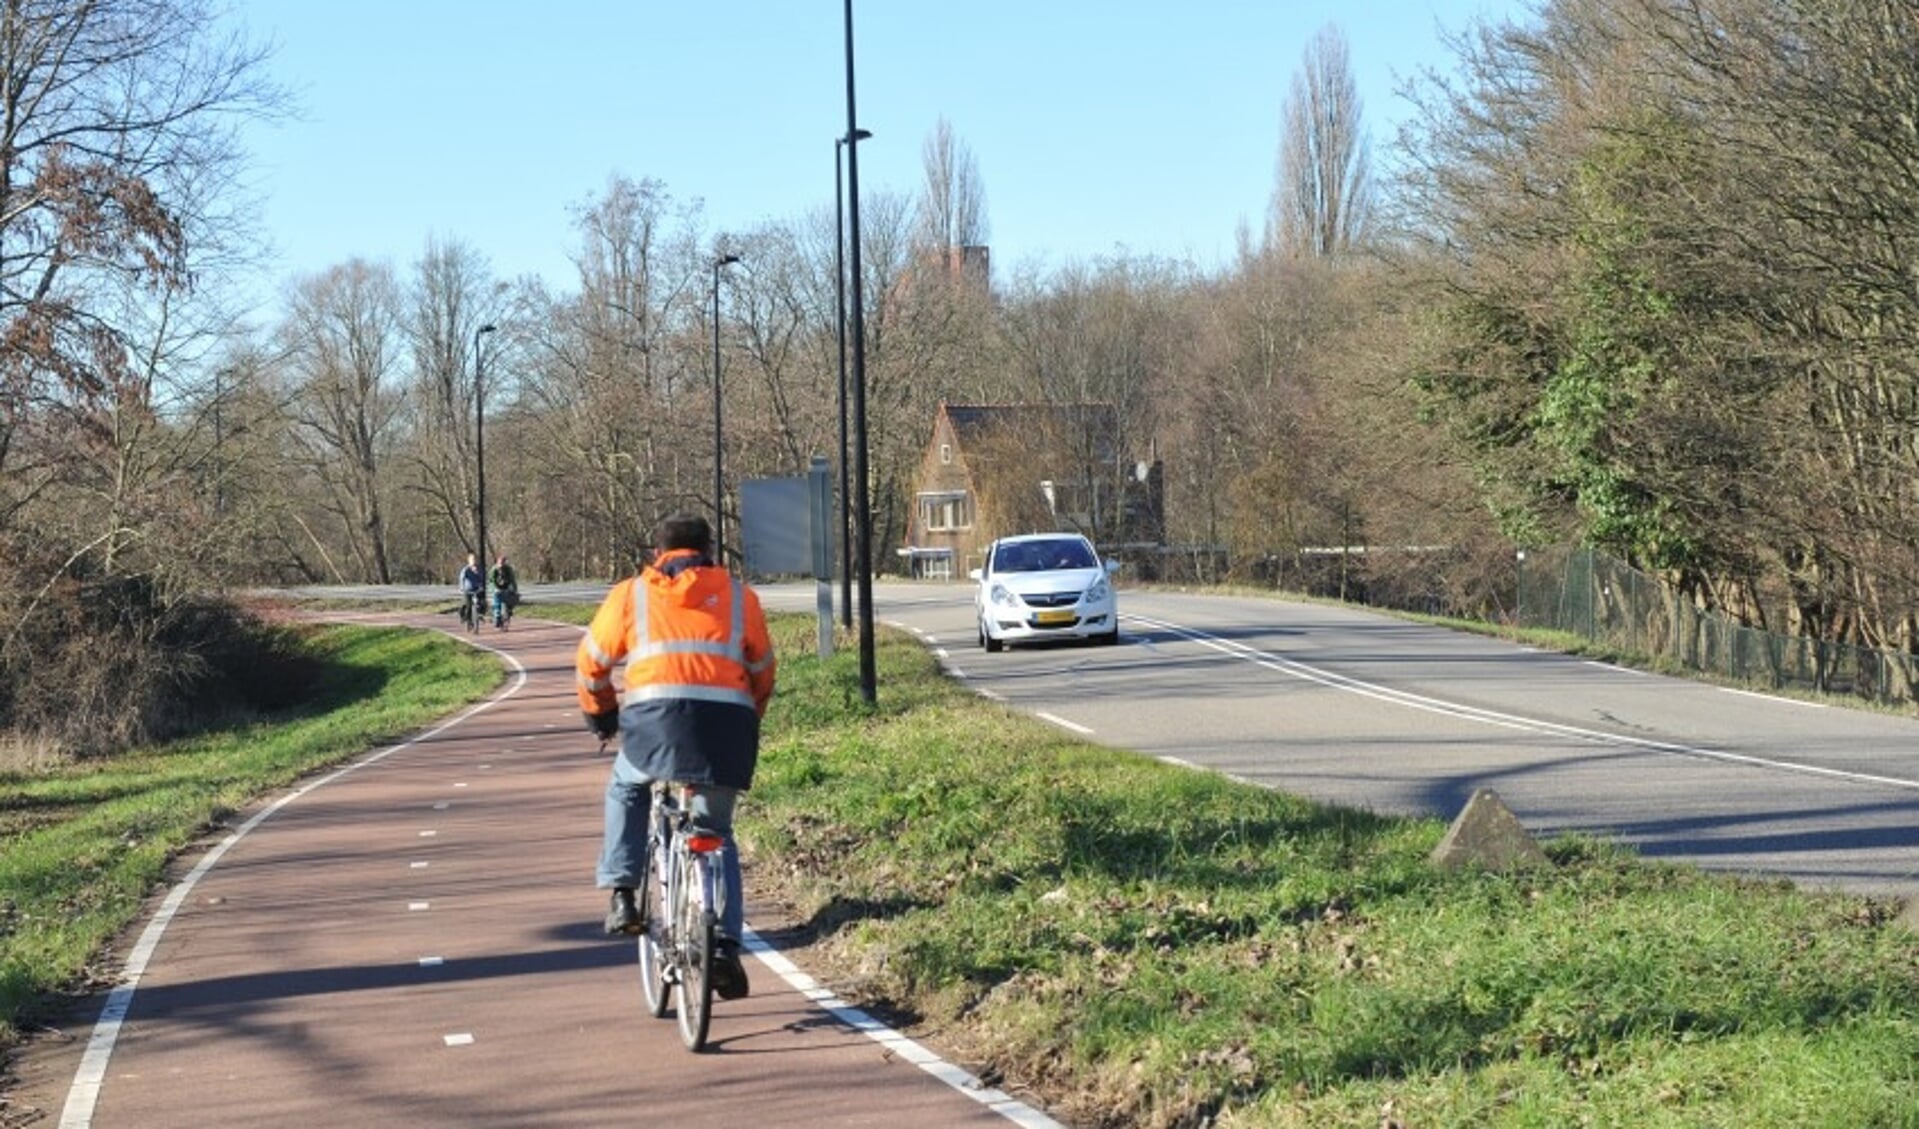 Zaanstad wil haar inwoners 'verleiden' om vaker te lopen, de fiets of het openbaar vervoer te gebruiken. 